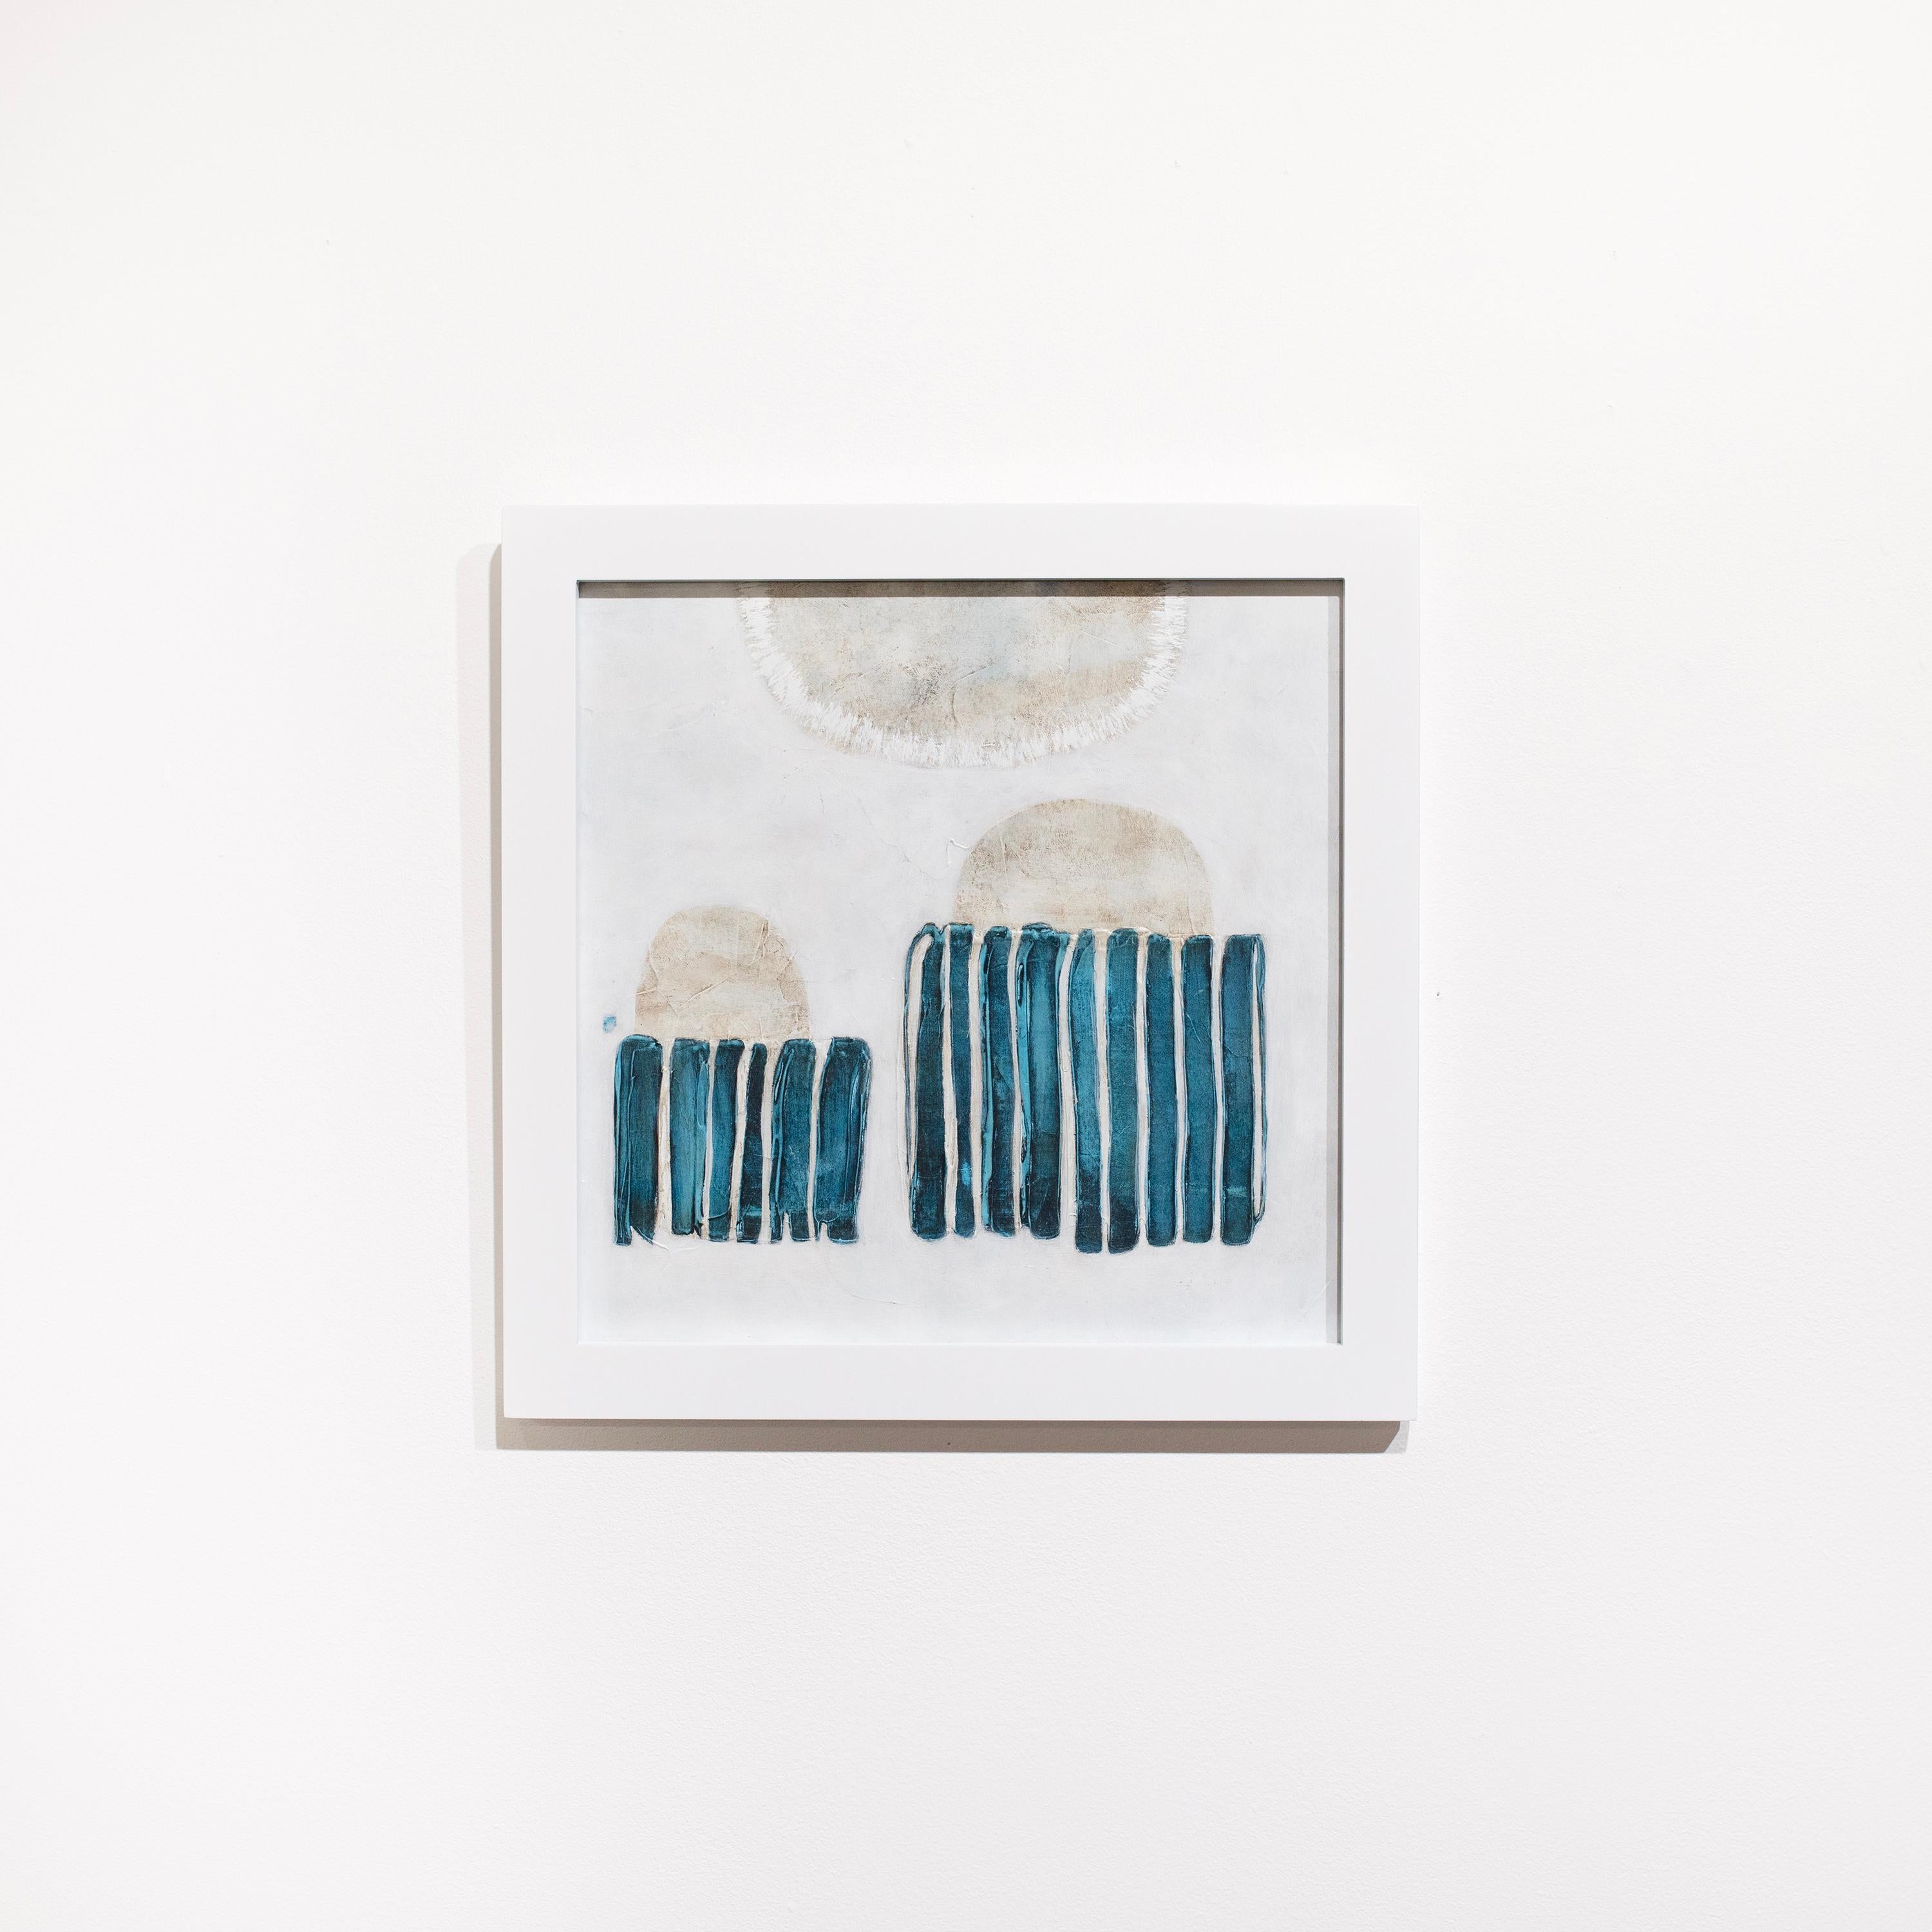 Cette peinture abstraite de Sofie Swann présente une palette côtière fraîche, avec des formes bleu sarcelle et beige sur un fond blanc. La peinture est réalisée sur papier et mesure 12